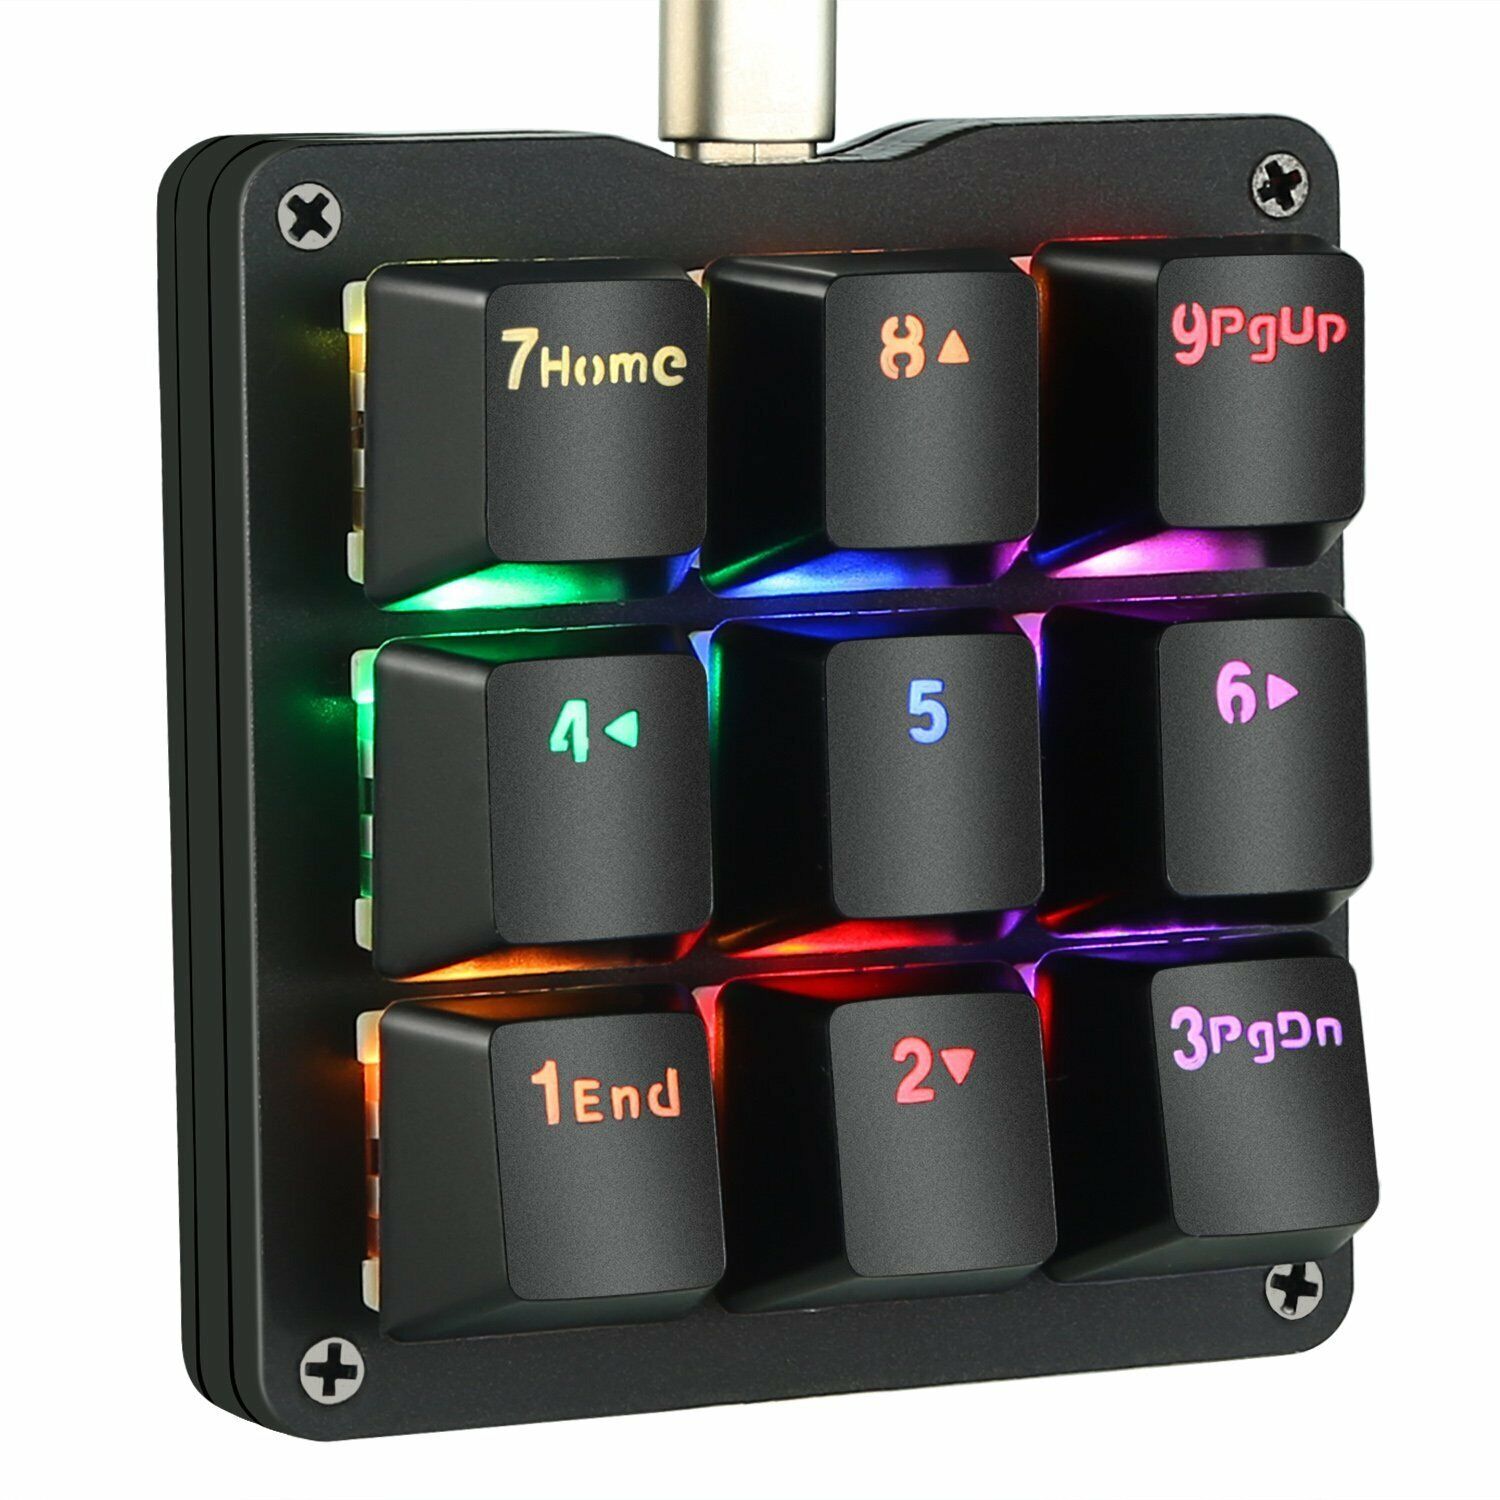 9 Keys Mini Macro Mechanical Keyboard Gaming Keypad RGB LED with Blue Switches